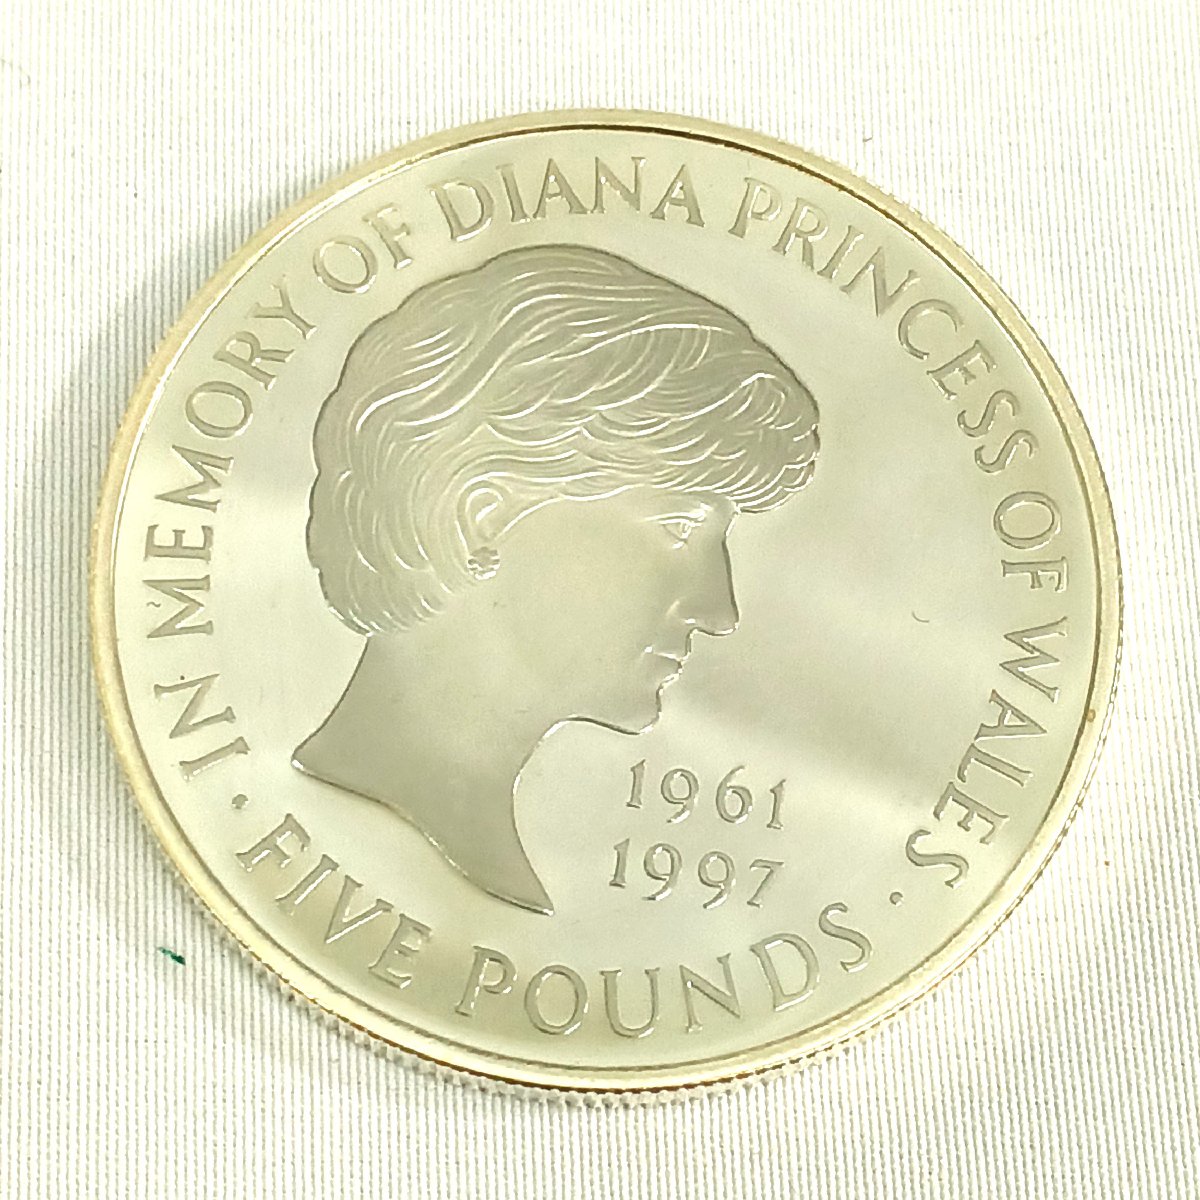 ダイアナ妃追悼記念コイン シルバープルーフ メモリアル 5ポンド 金貨 